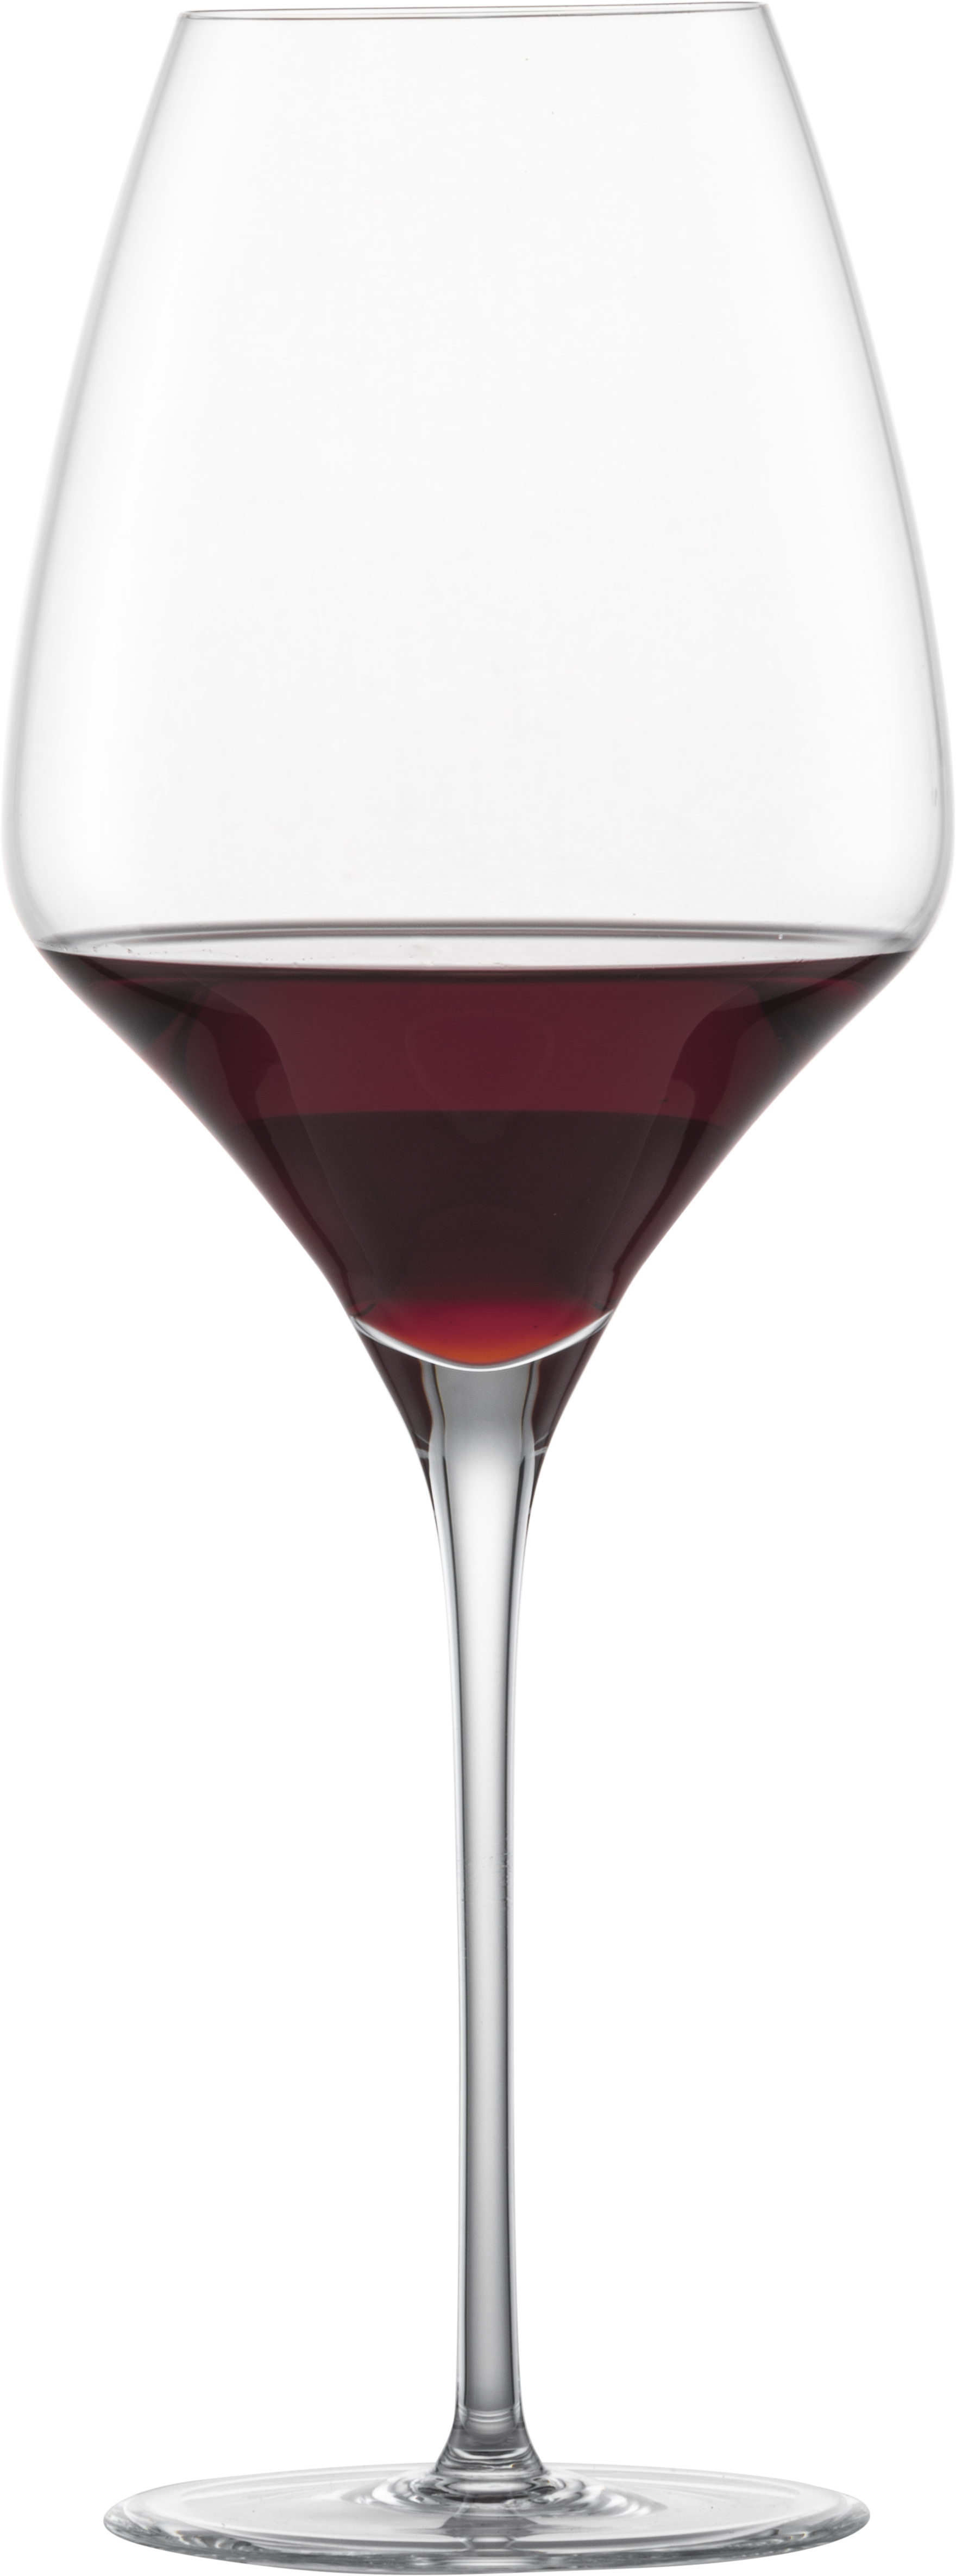 Cabernet Sauvignon red wine glass ZWIESEL GLAS Alloro 